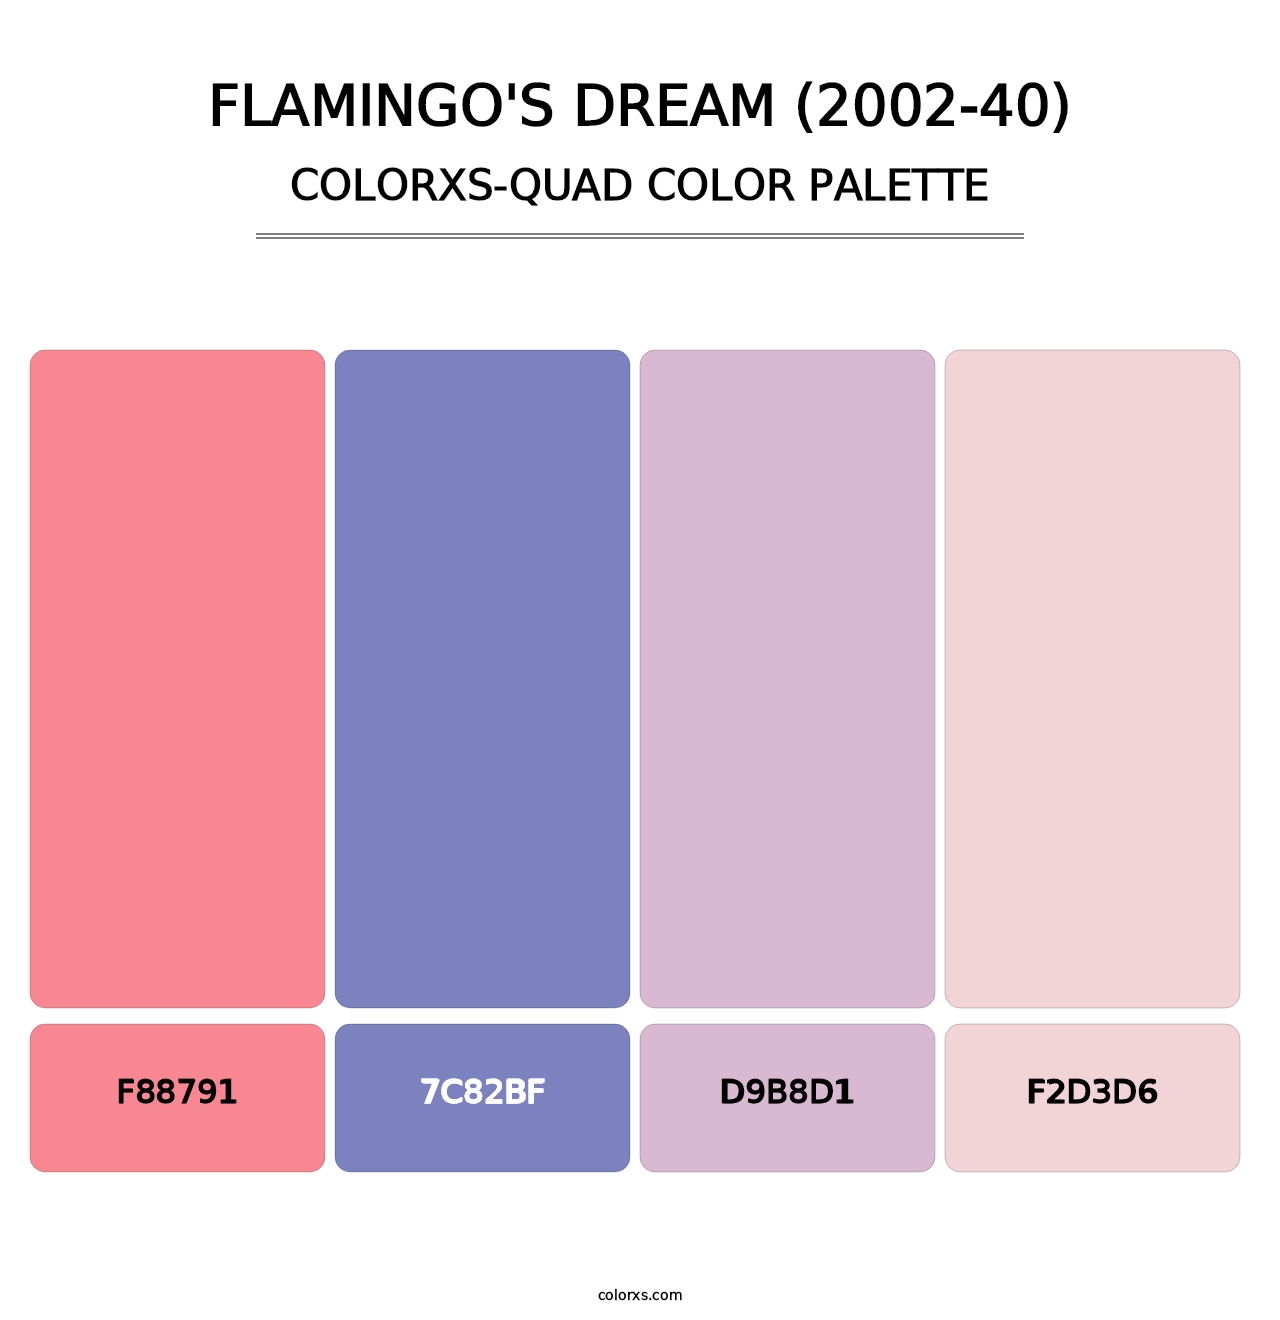 Flamingo's Dream (2002-40) - Colorxs Quad Palette